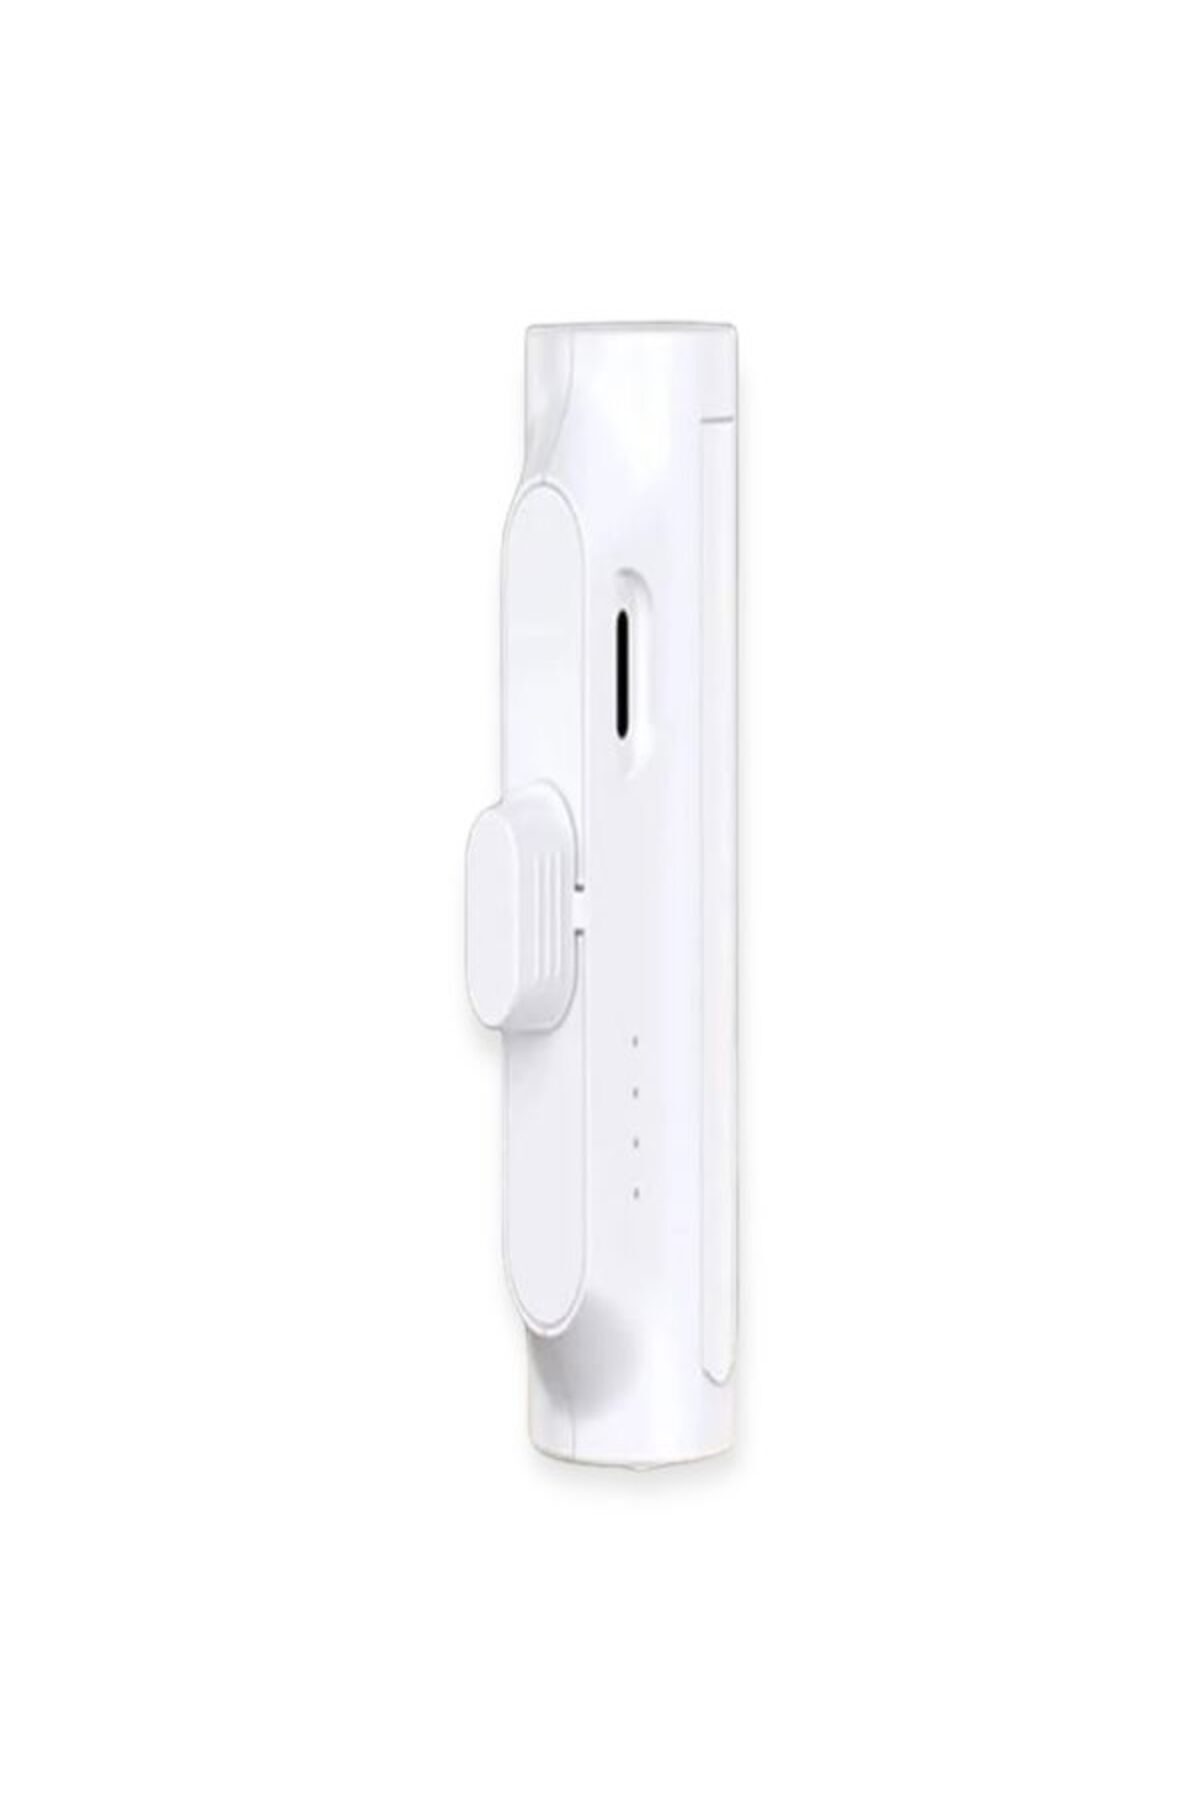 ÇELİKWORK Pwq93 5000mah Elektronik Beyaz Taşınabilir Batarya Powerbank Type-c Telefon Mini Şarj Aleti